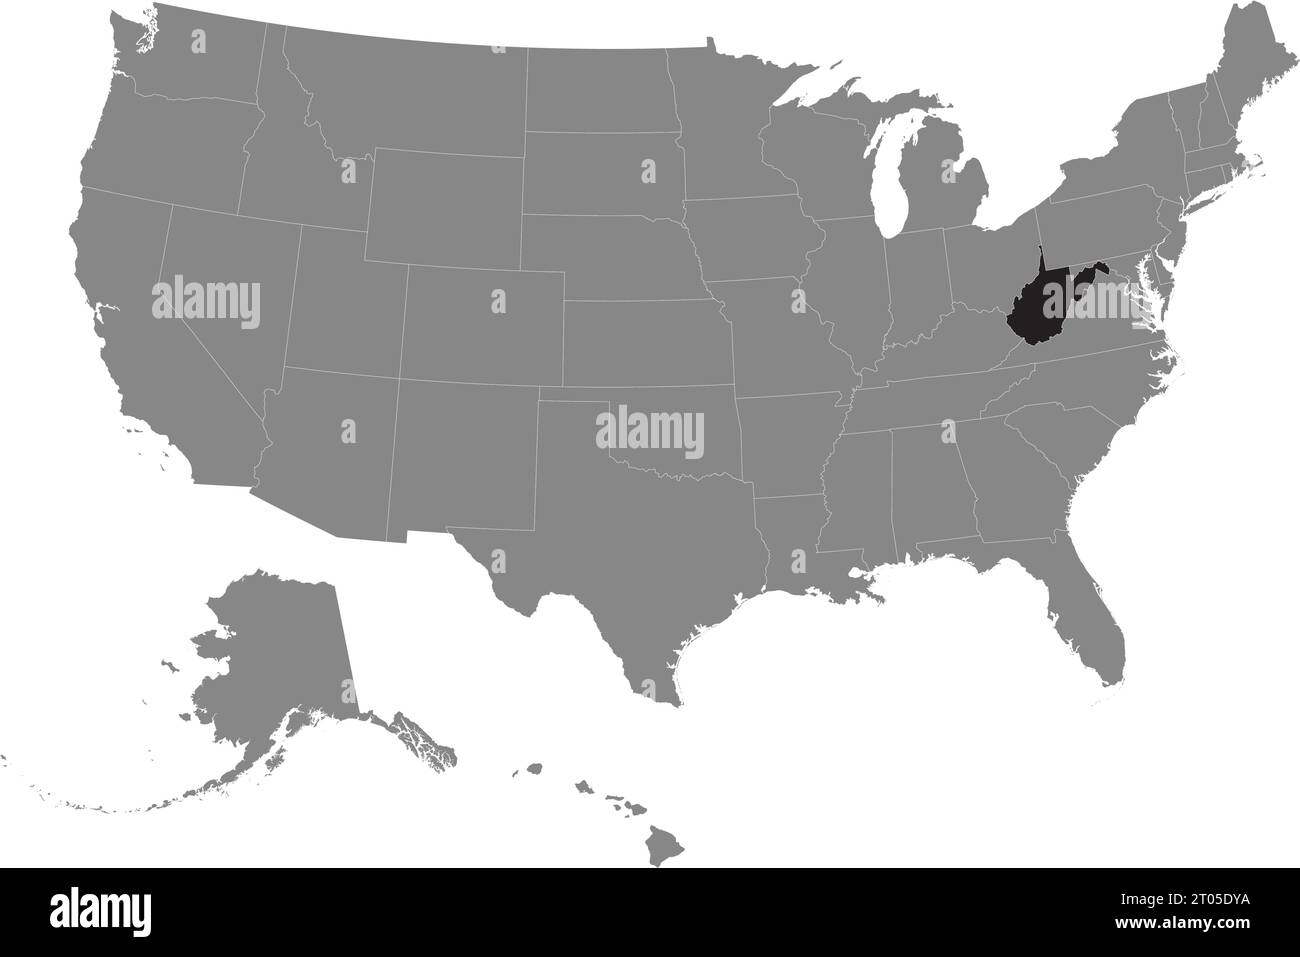 Schwarze CMYK-Bundeskarte von WEST VIRGINIA in detaillierter grauer, leerer politischer Karte der Vereinigten Staaten von Amerika auf transparentem Hintergrund Stock Vektor